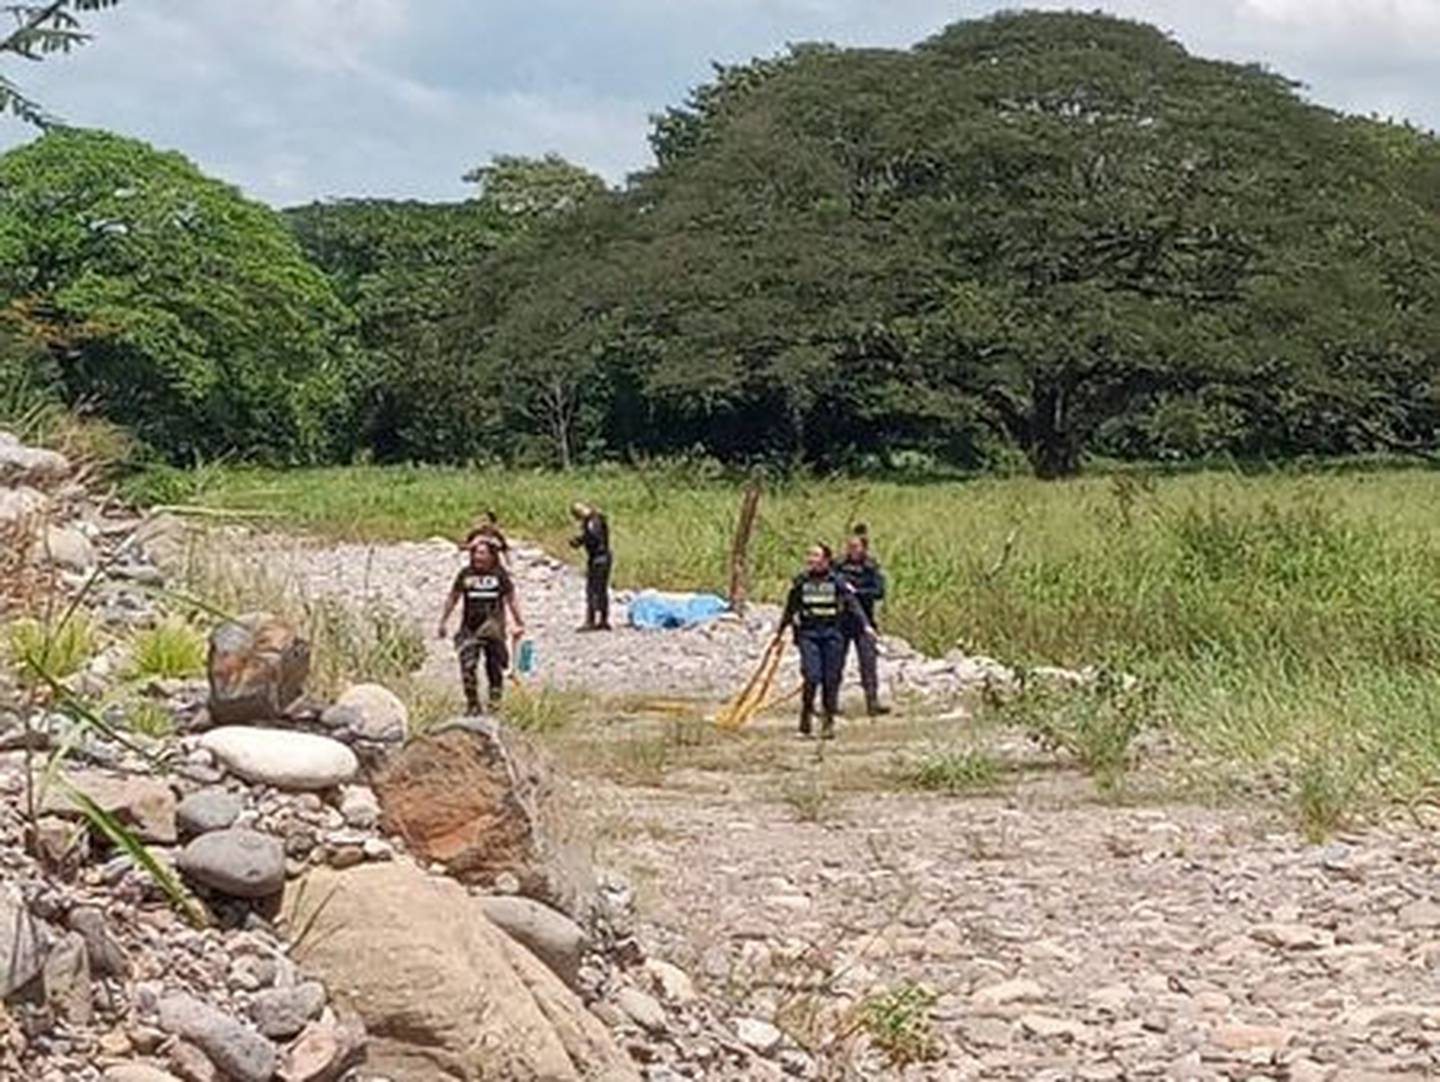 Los cuerpos fueron encontrados por dos pescadores. Foto Ahora Noticias.